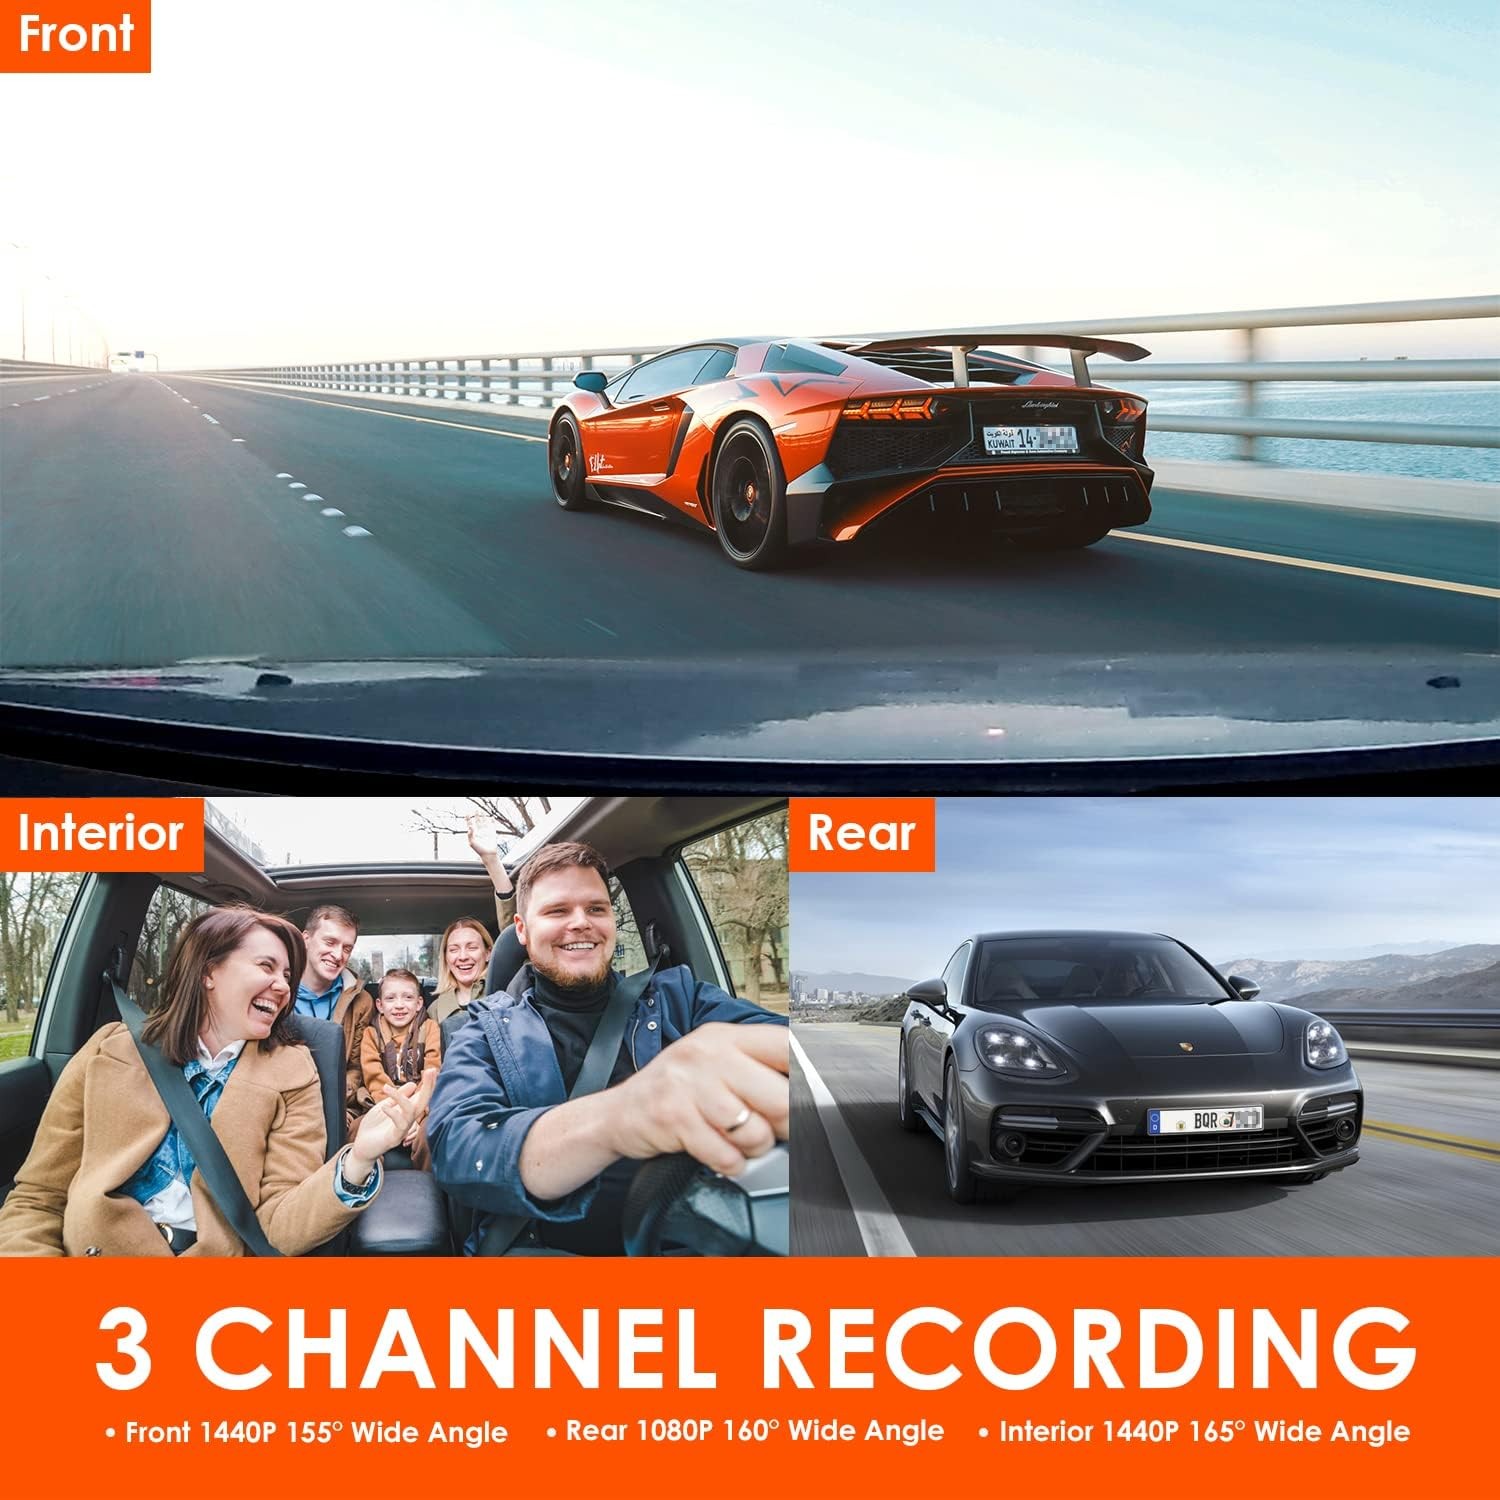 Vantrue OnDash N4 review: Versatile 3-channel dash cam captures with 4K